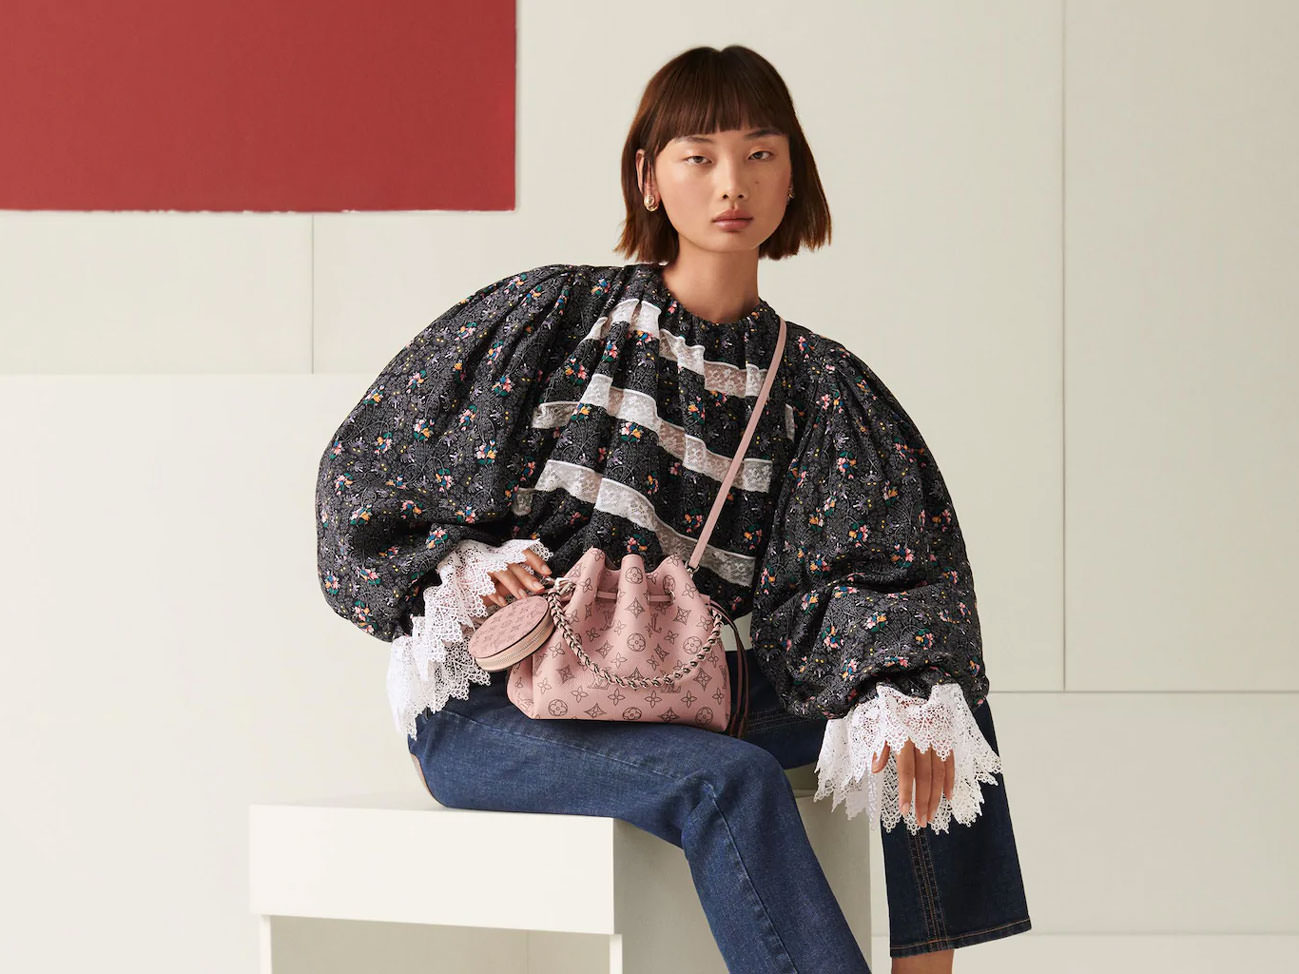 Introducing the Louis Vuitton Bella Bag - PurseBlog